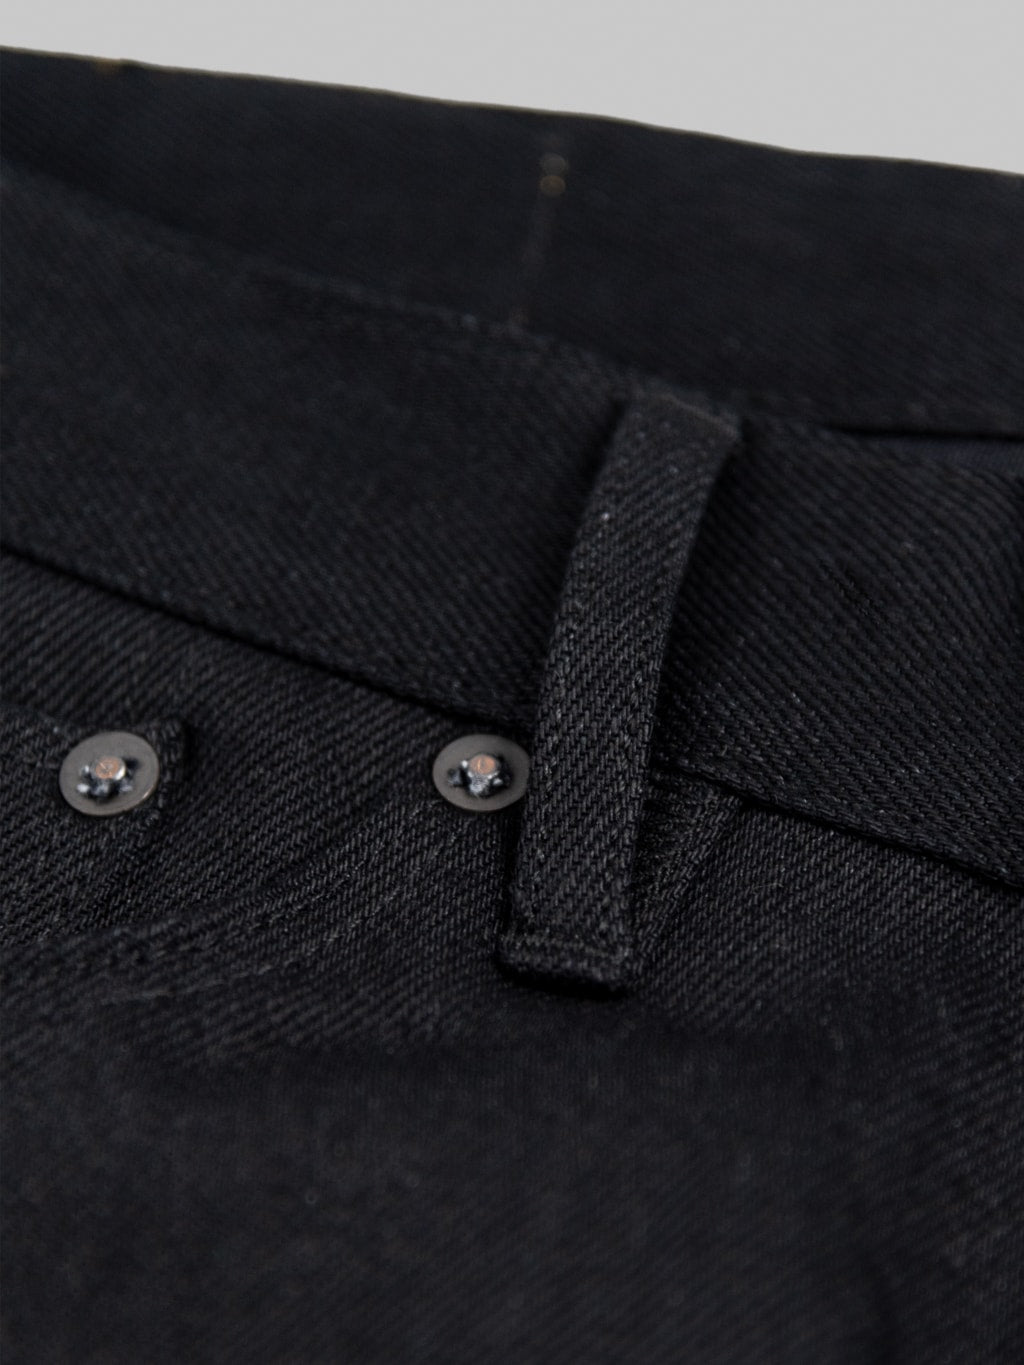 Stevenson Overall Big Sur 210 12oz Slim Tapered jeans solid black rivets